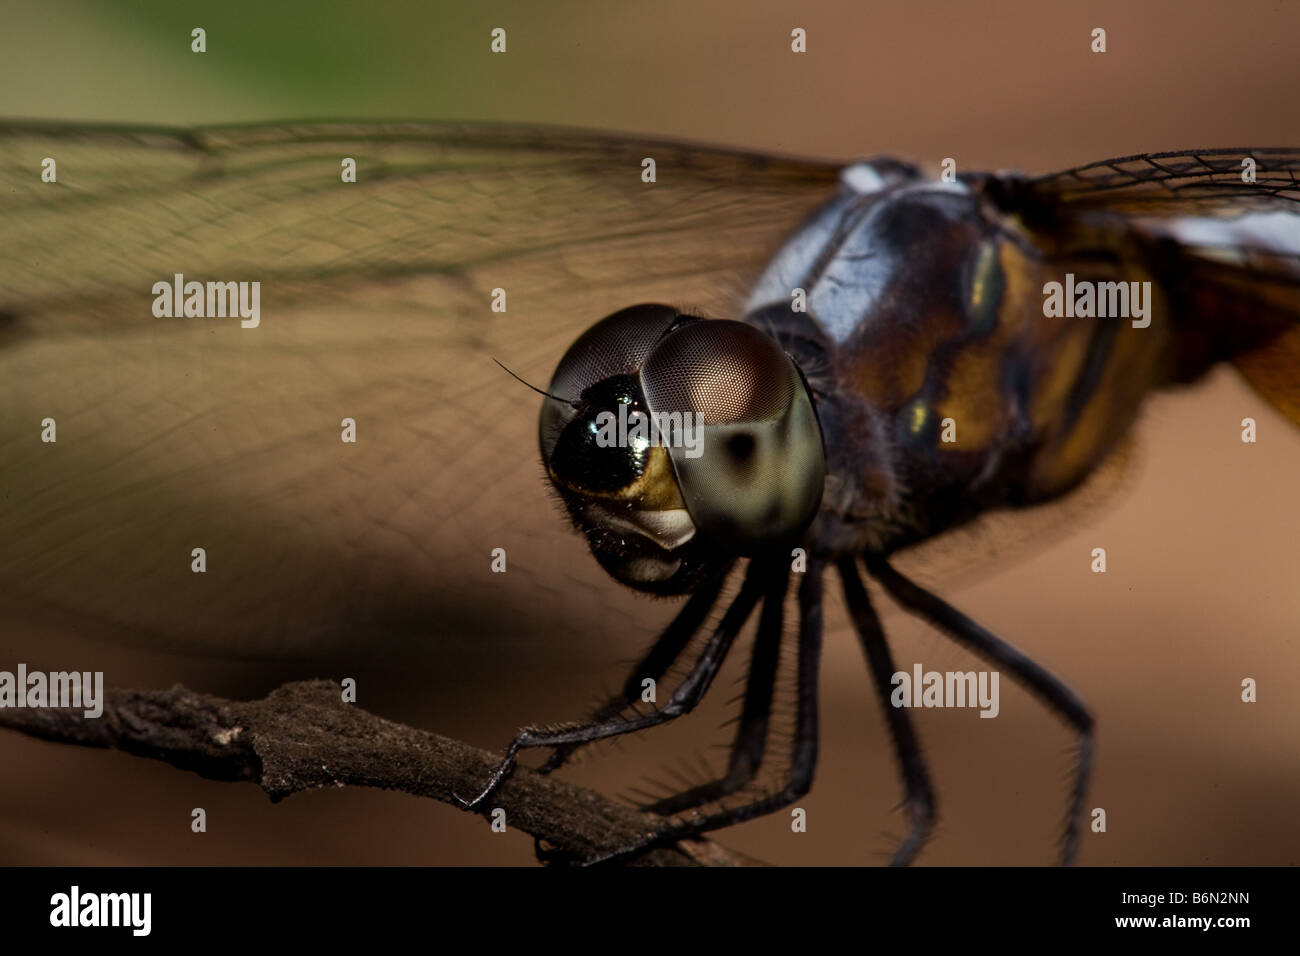 Una macro de una libélula, mostrando los detalles de sus ojos compuestos Foto de stock